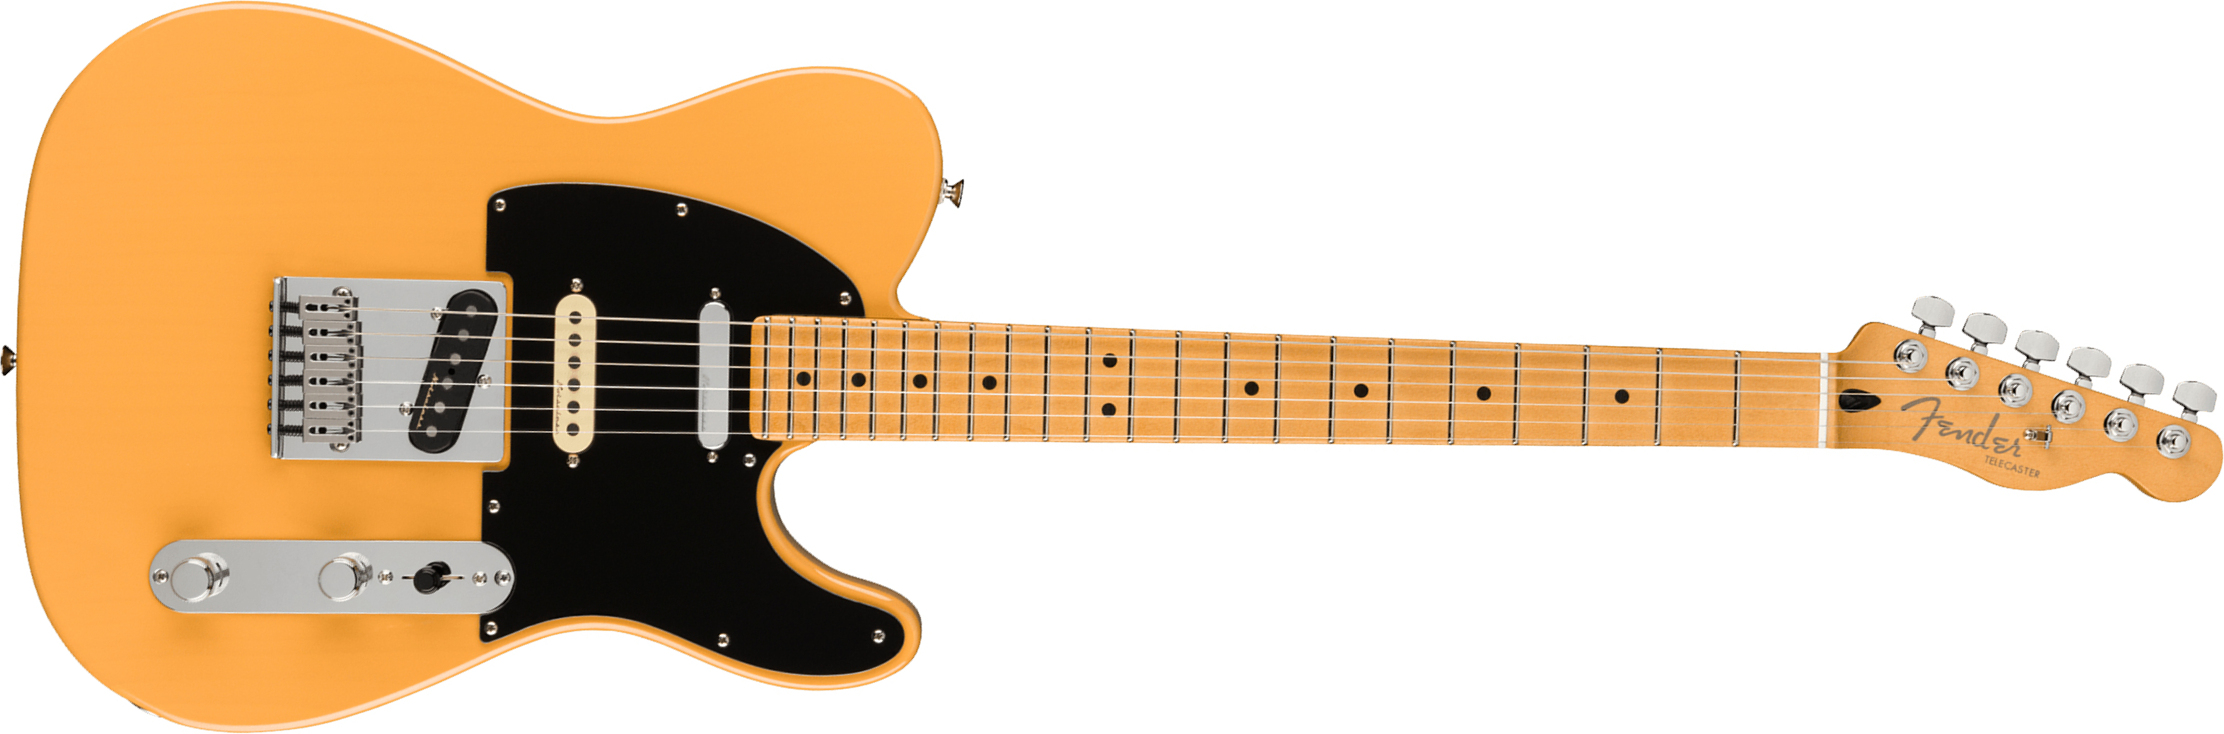 Fender Tele Player Plus Nashville Mex 3s Ht Mn - Butterscotch Blonde - Tel shape electric guitar - Main picture